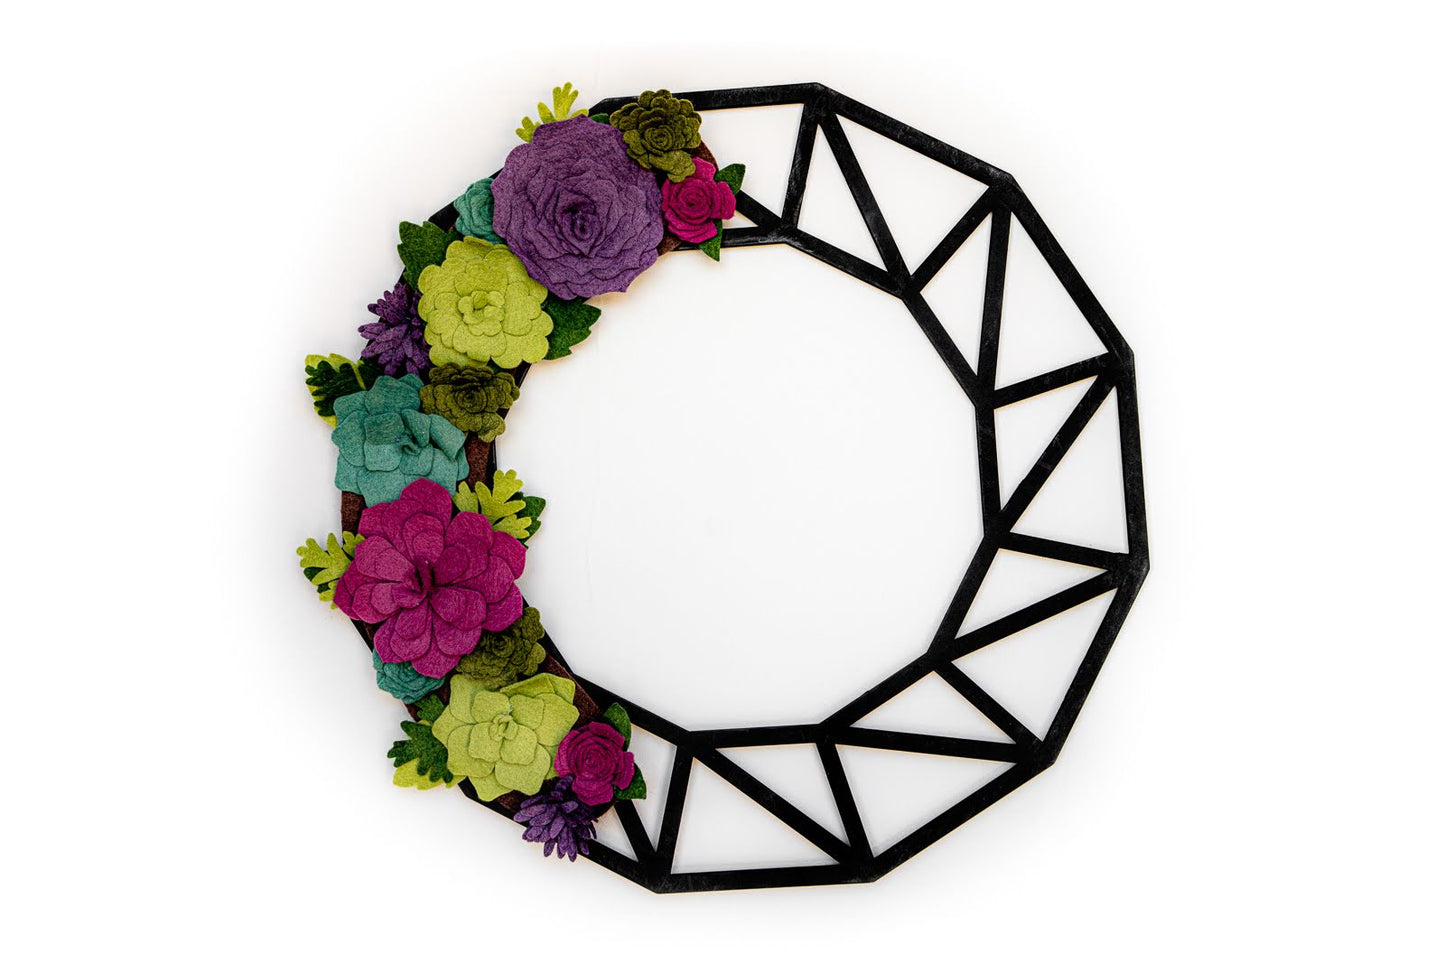 18" Geometric Wreath Base | Black